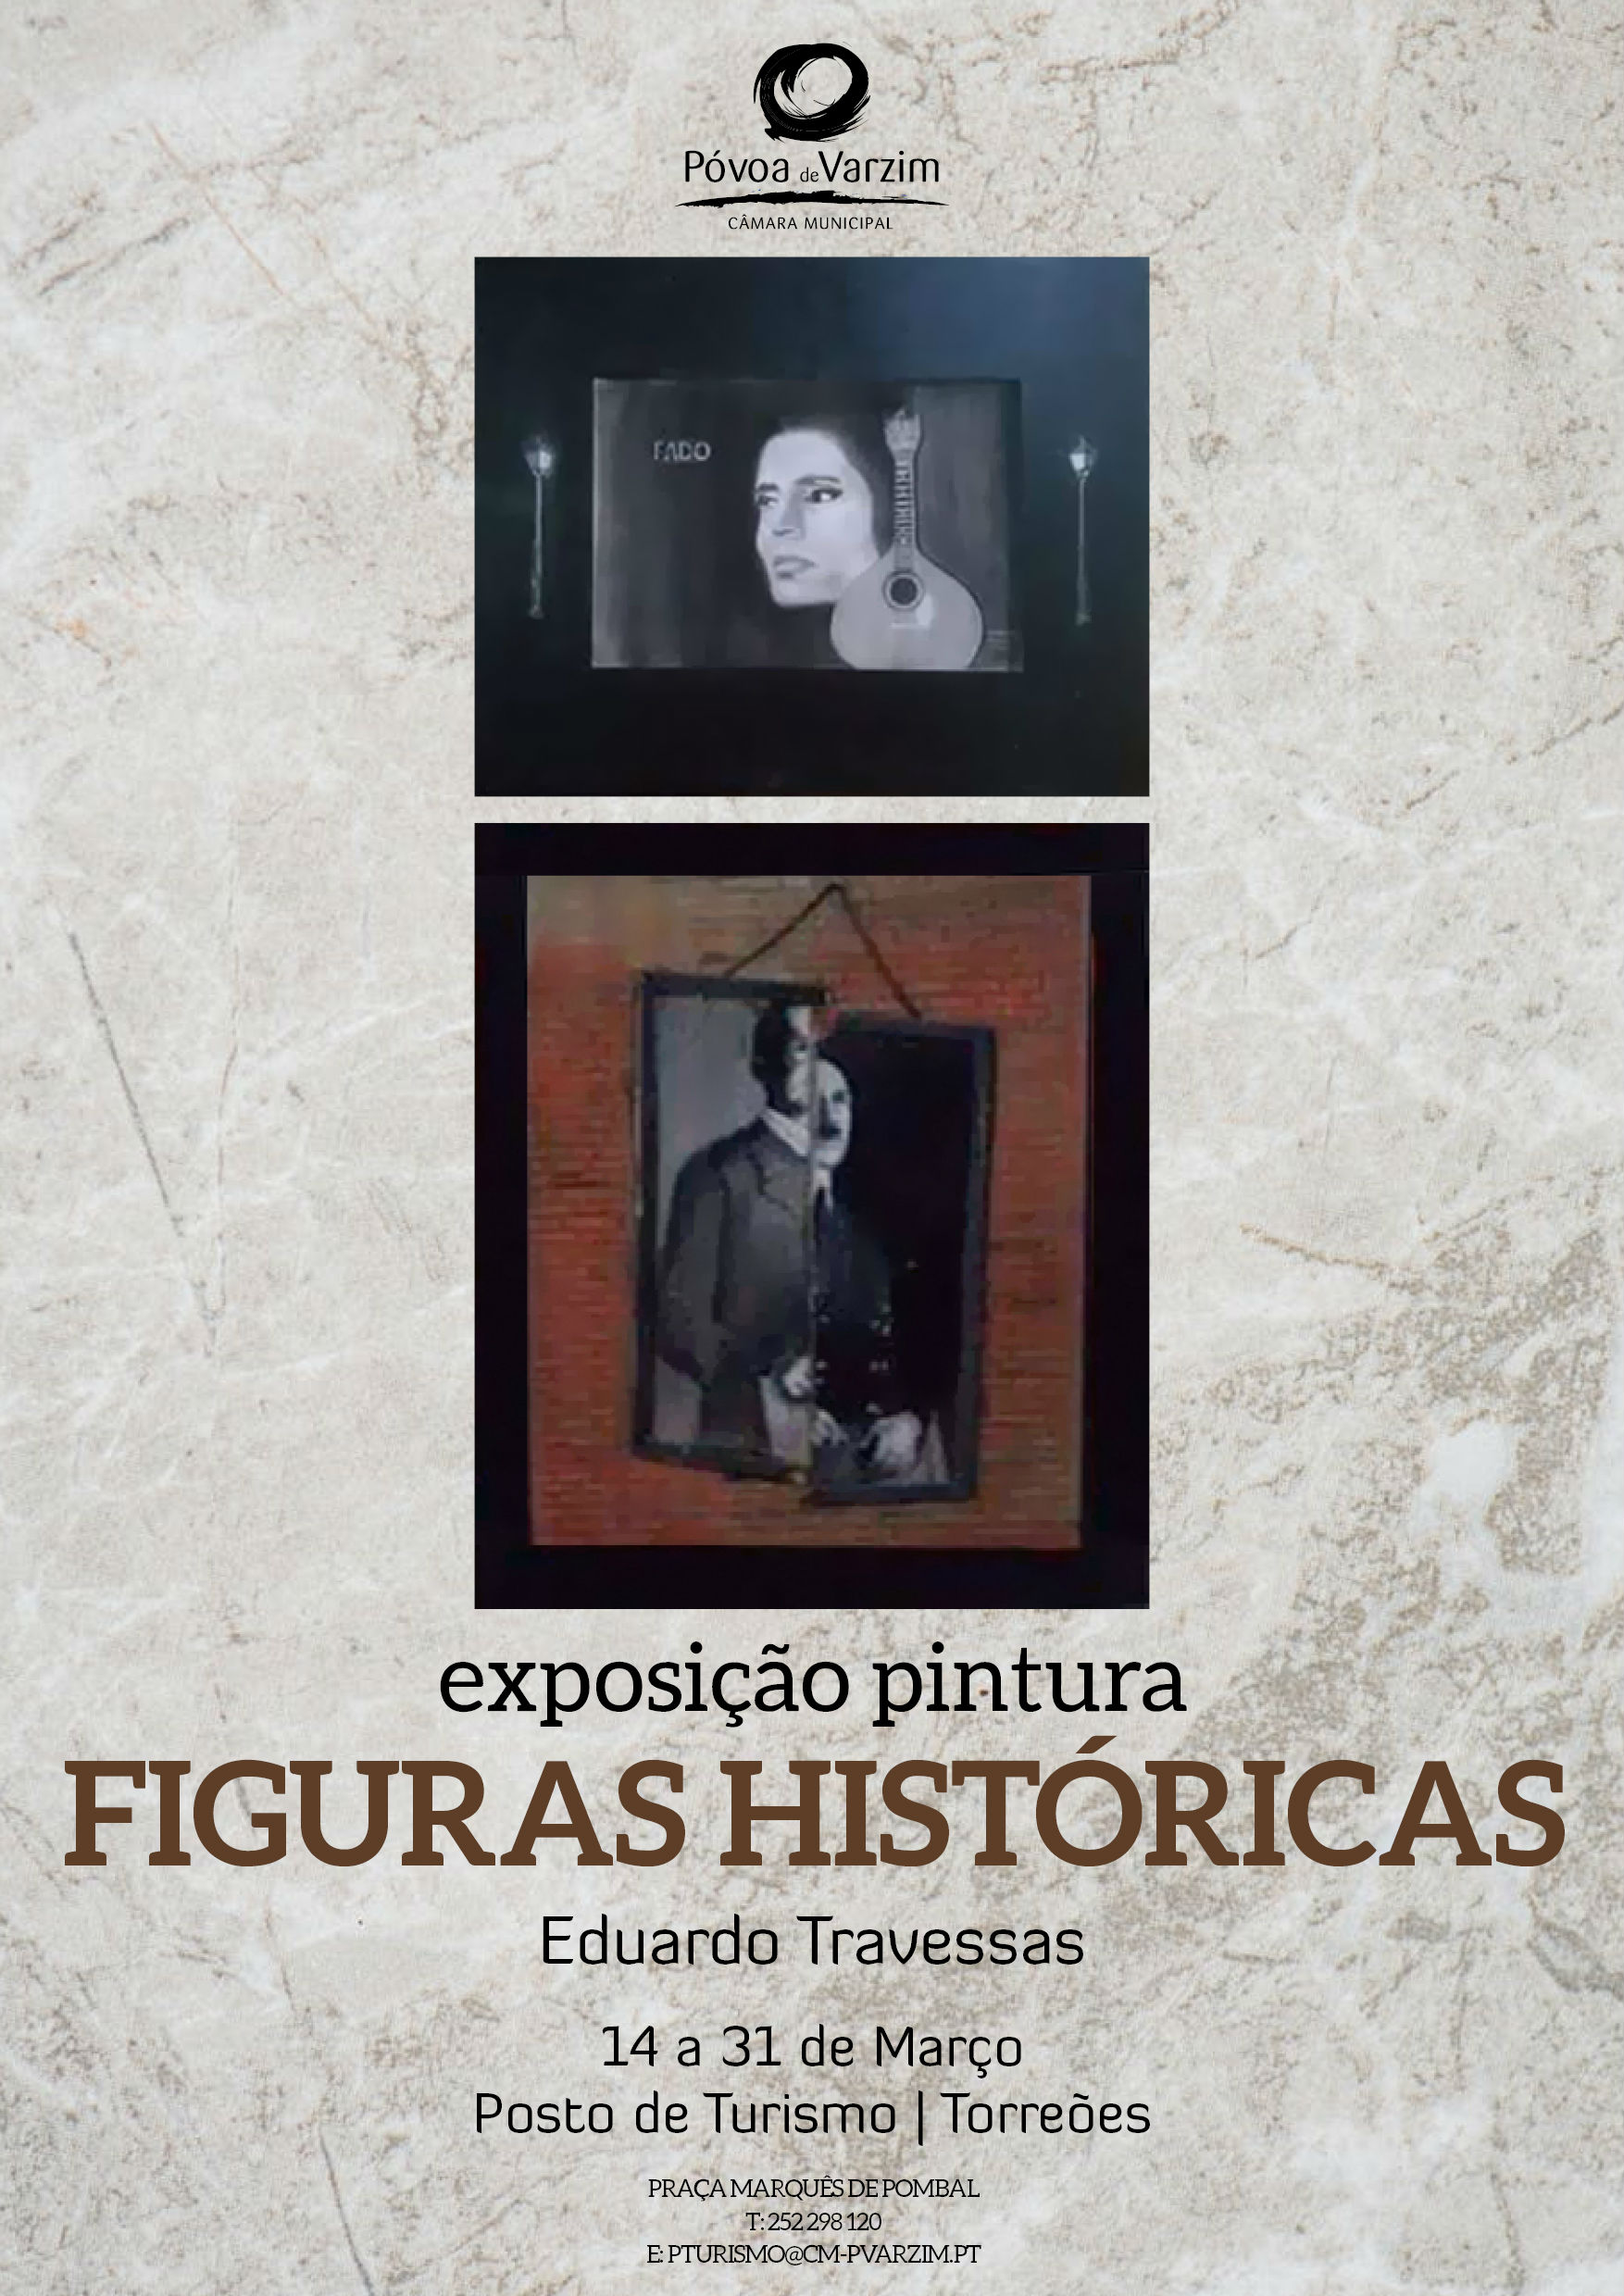 Exposição de Pintura "Figuras Históricas"